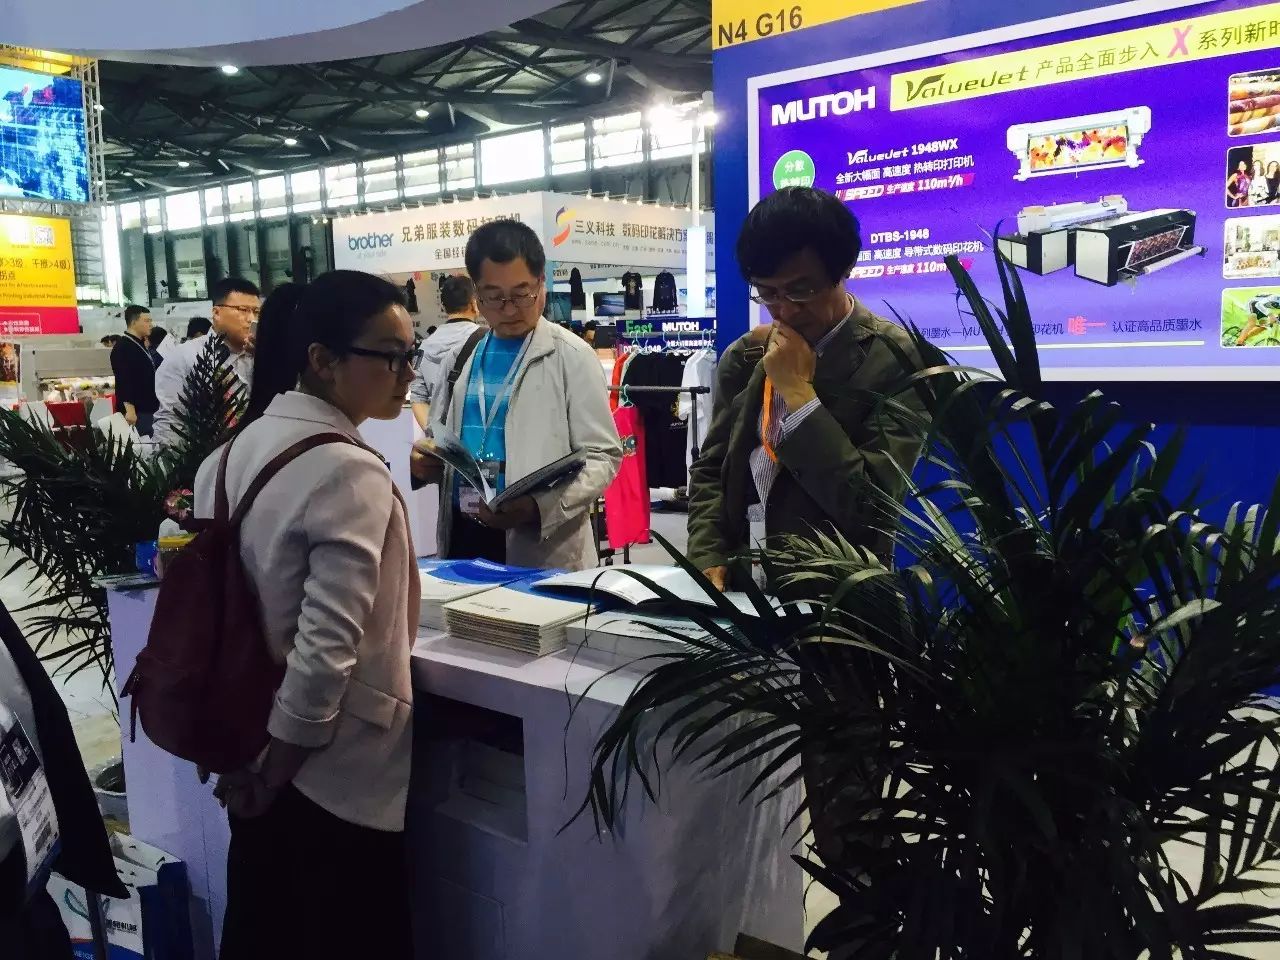 2017年4月20日美格参加上海国际数码印花工业展览会